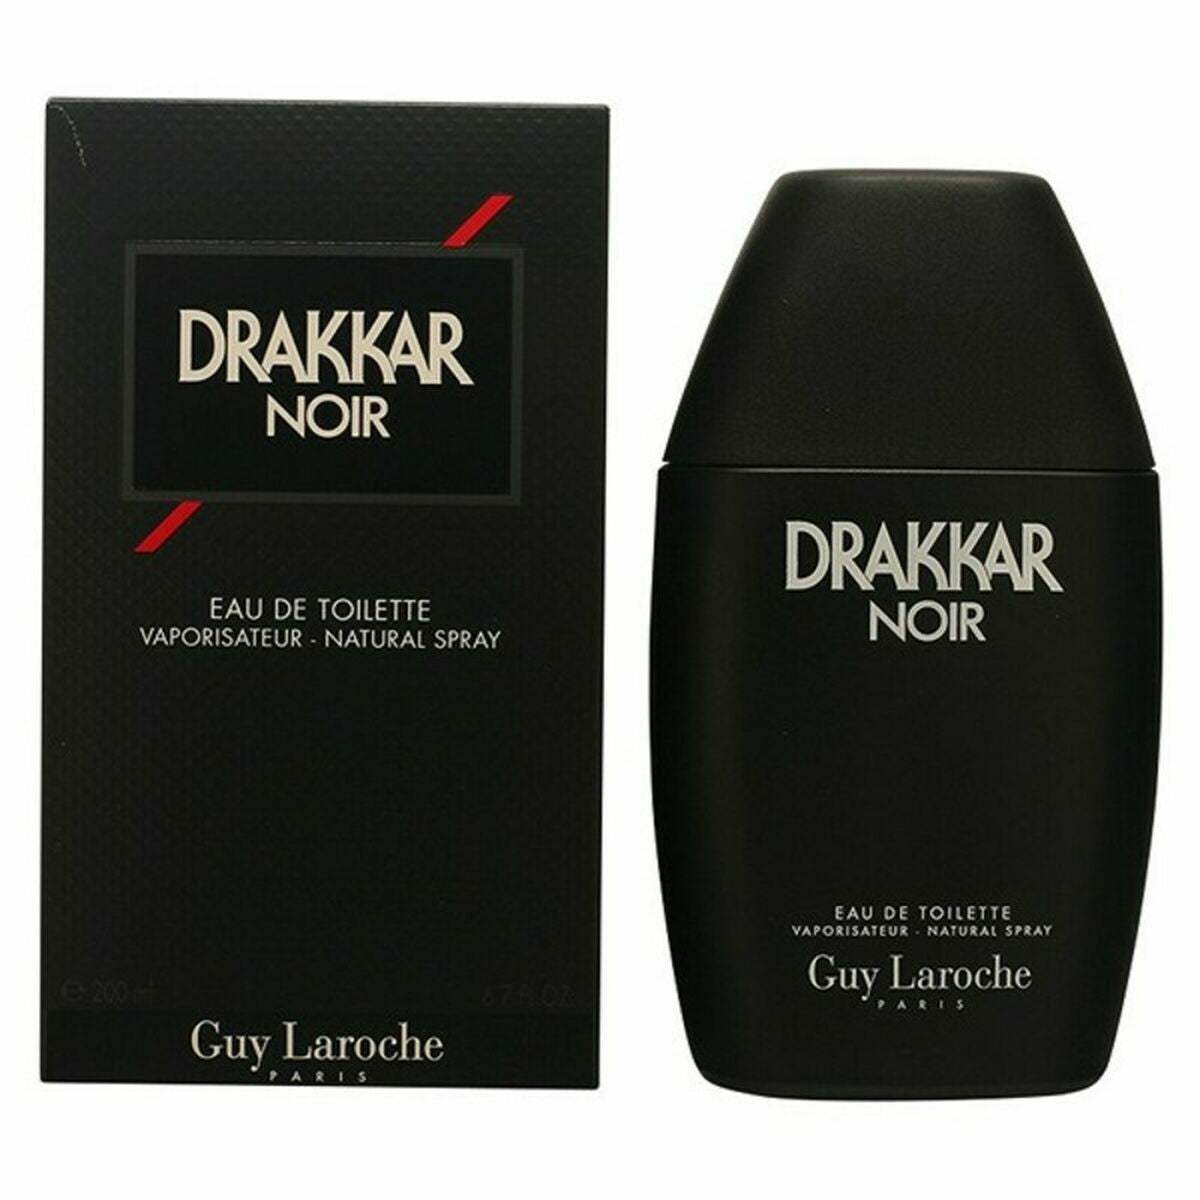 Parfum Homme Guy Laroche EDT Drakkar Noir 200 ml - Guy Laroche - Jardin D'Eyden - jardindeyden.fr